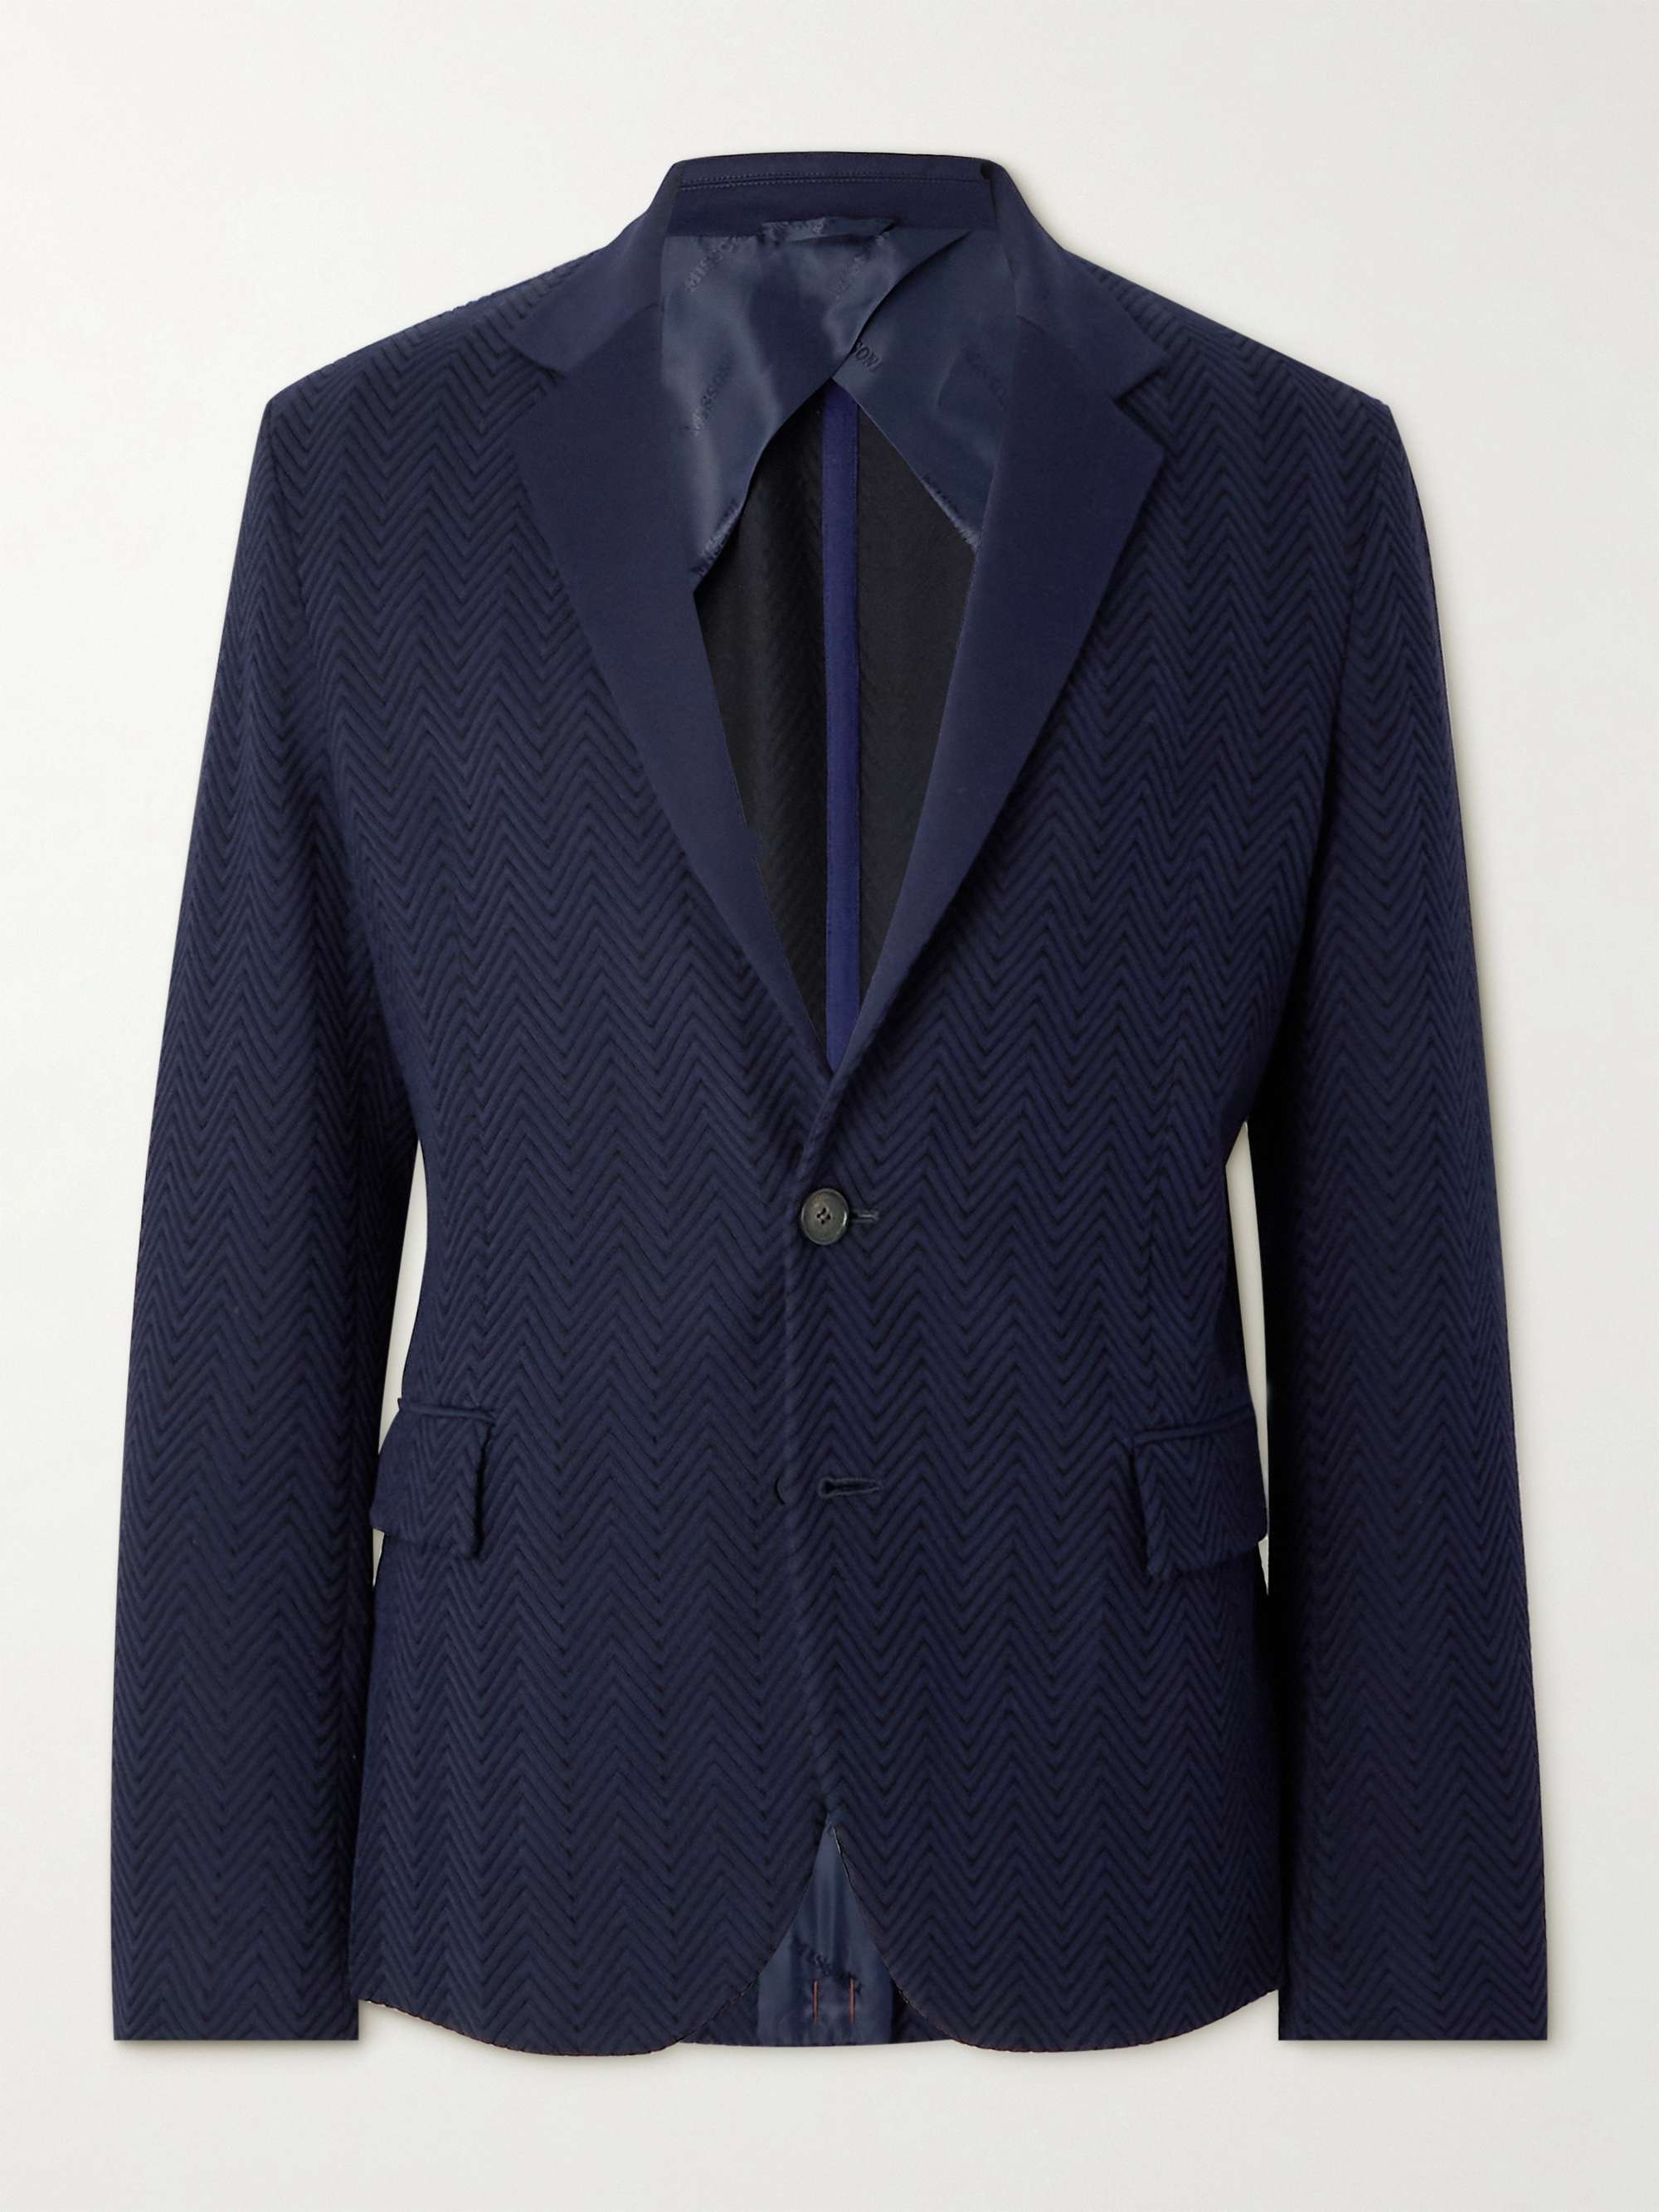 MISSONI Zigzag Cotton-Blend Jacquard Suit Jacket for Men | MR PORTER